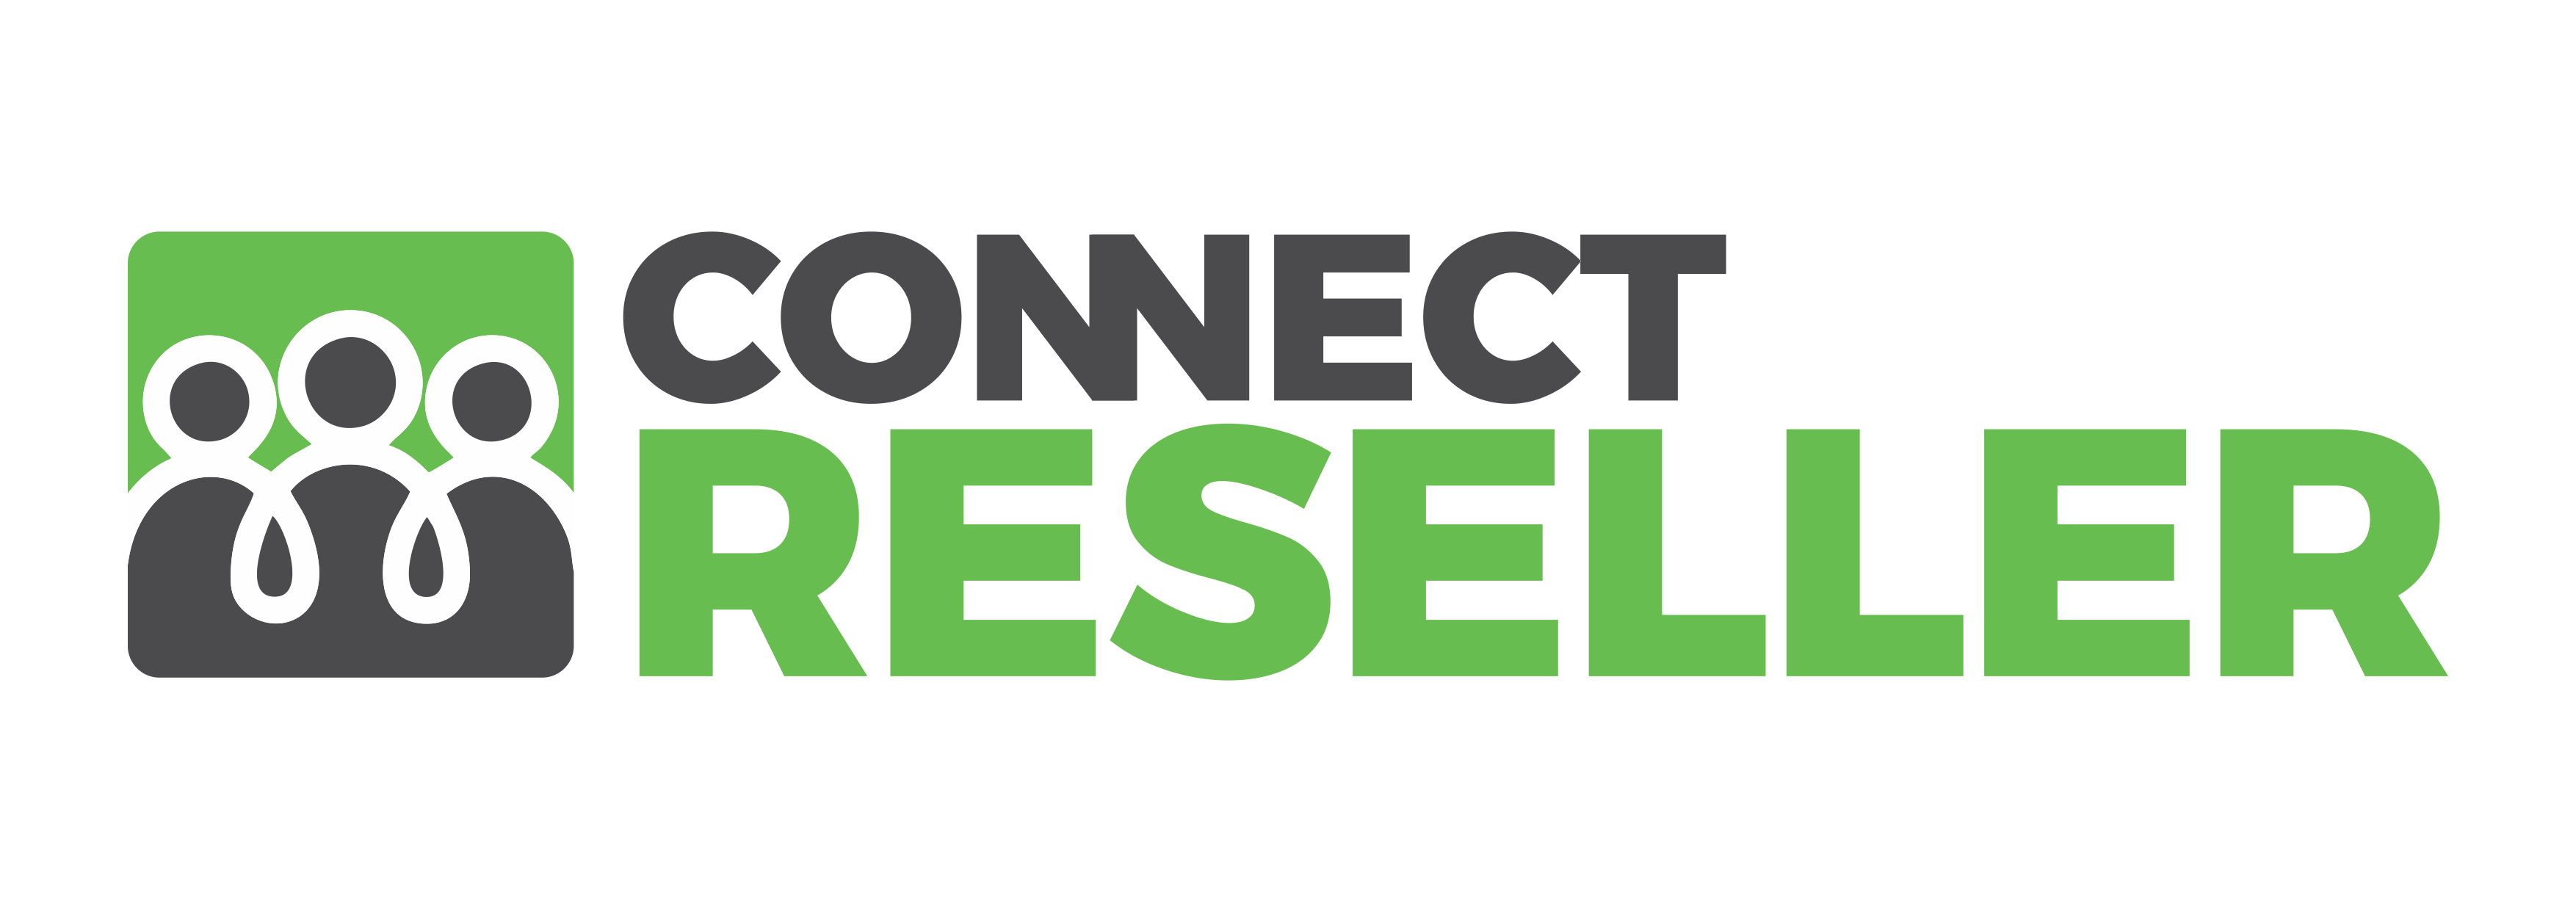 connectreseller-logo